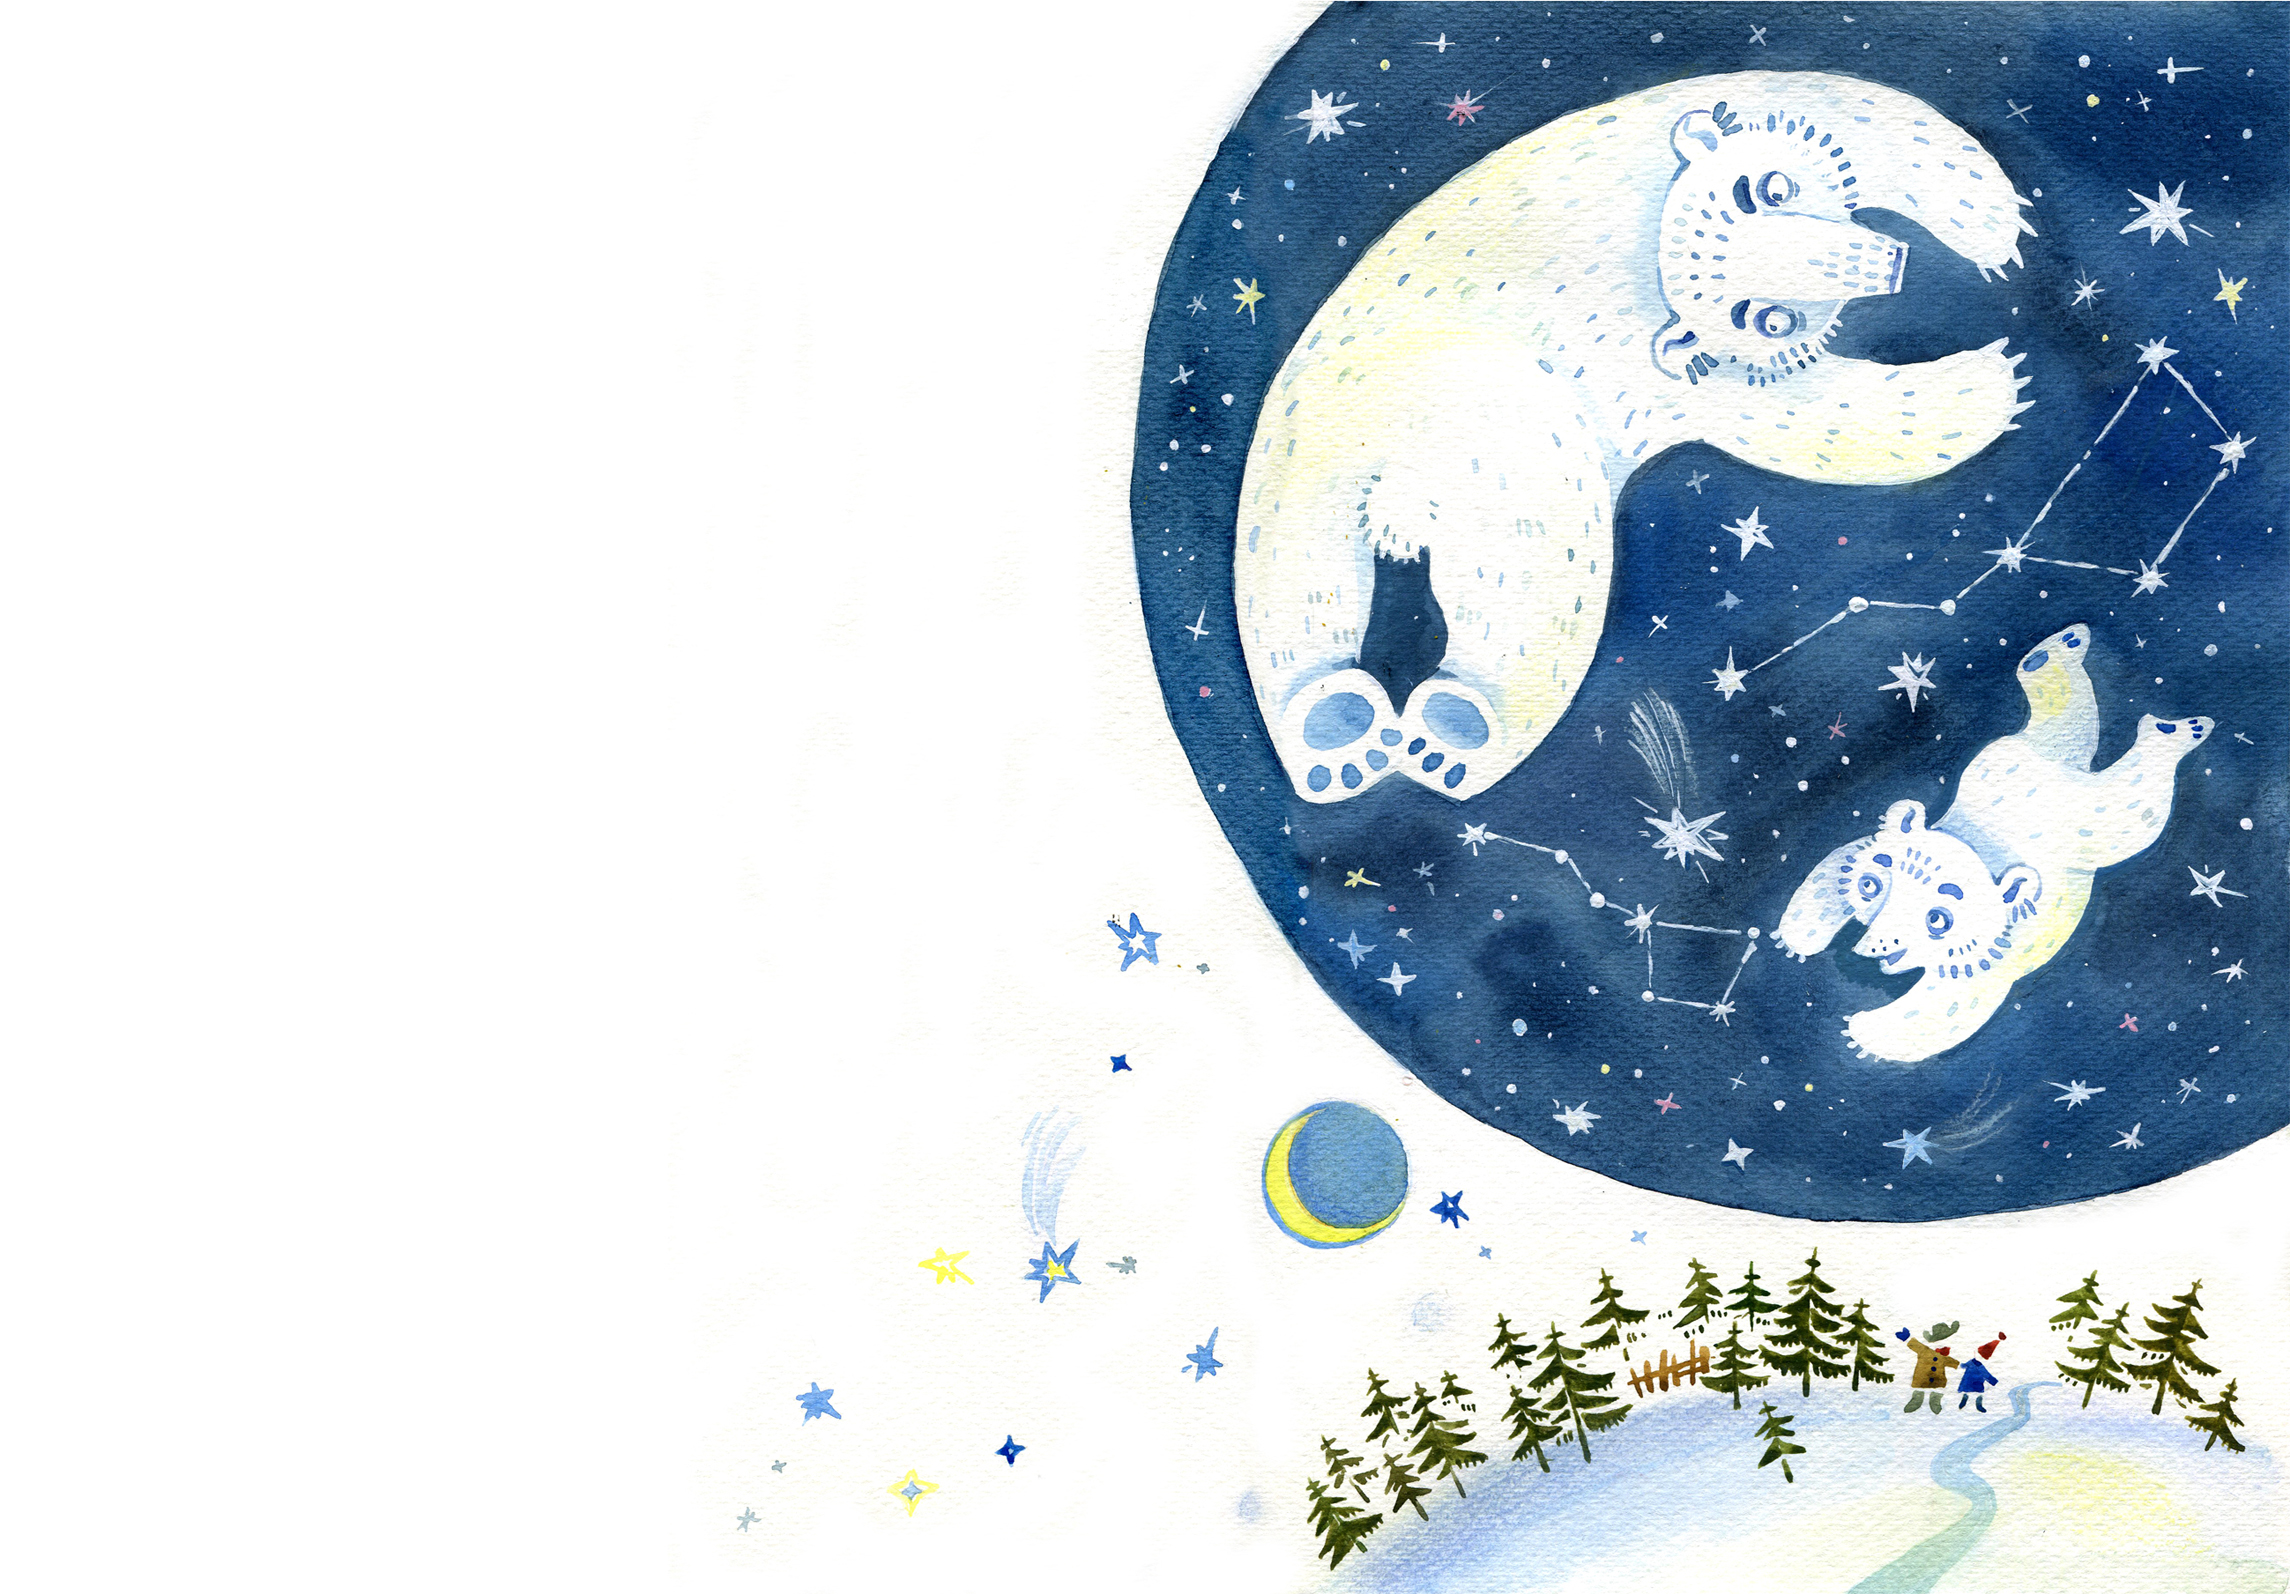 Колыбельная умки слушать час. Иллюстрация к колыбельной медведицы. Иллюстрация к колыбельной медведицы 2 класс. Иллюстрация к Колыбельная медведицы для детей. Колыбельная медведицы рисунок.